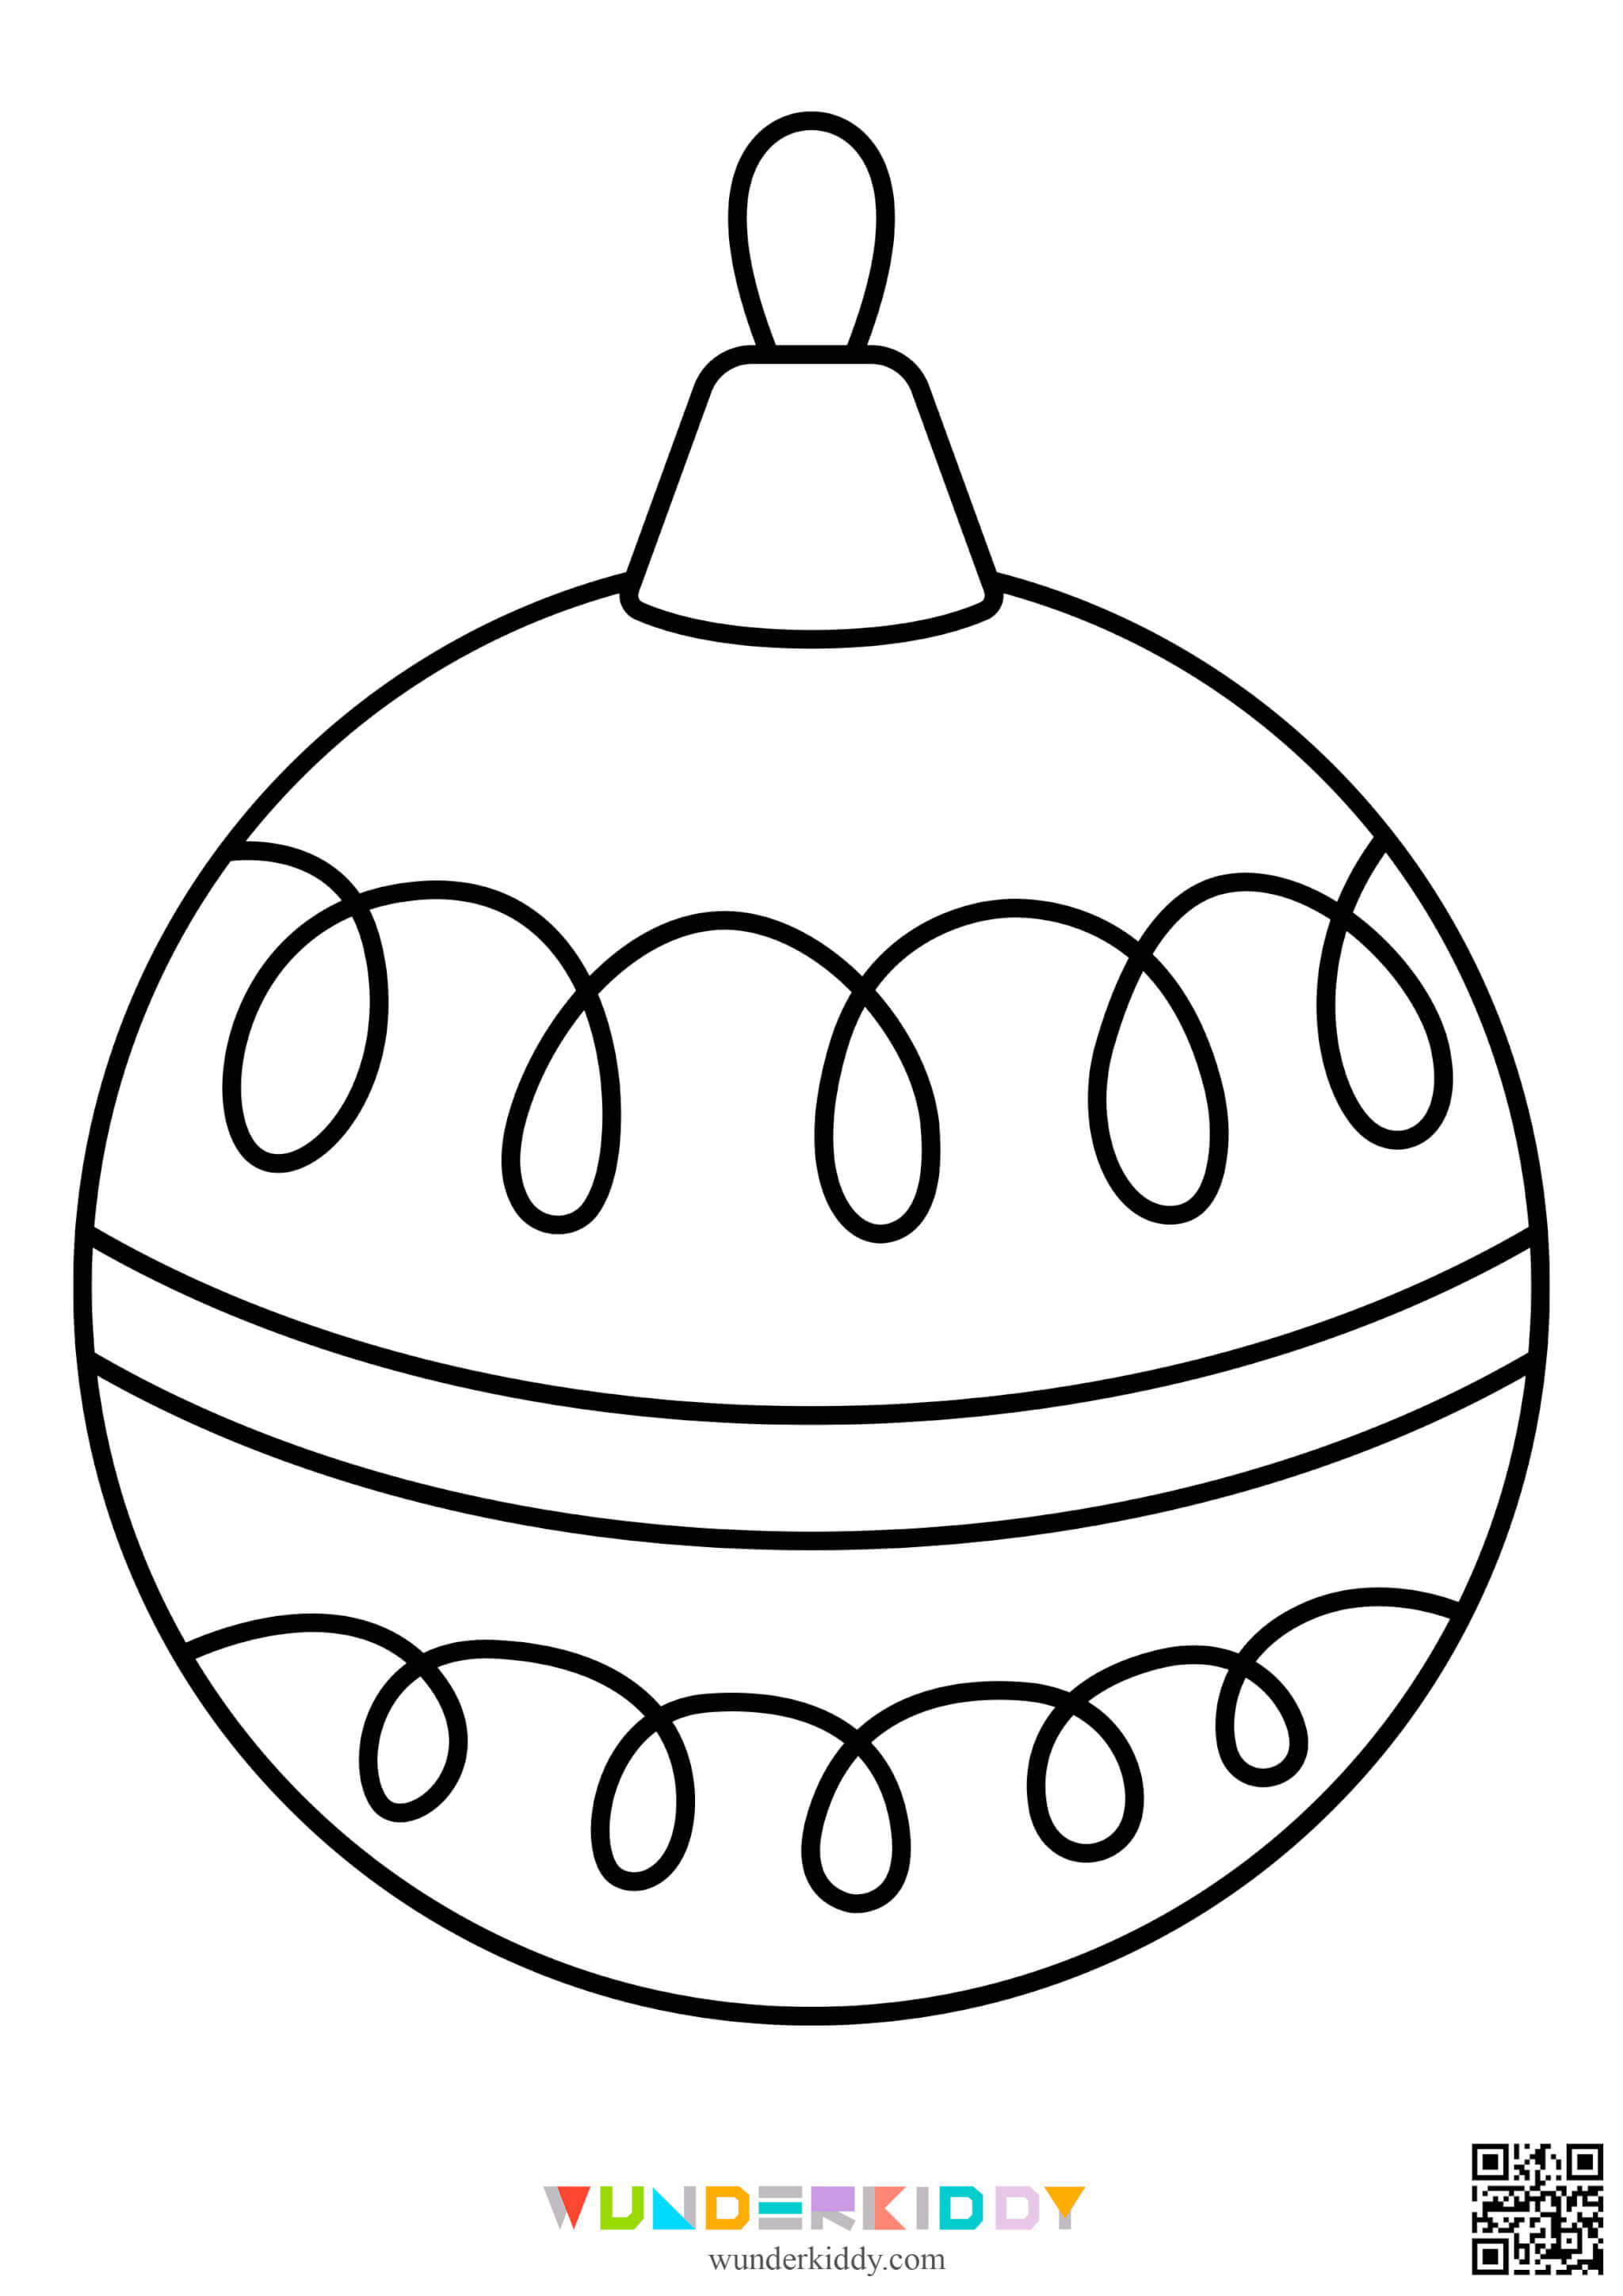 Розмальовки ялинкових кульок - Зображення 3